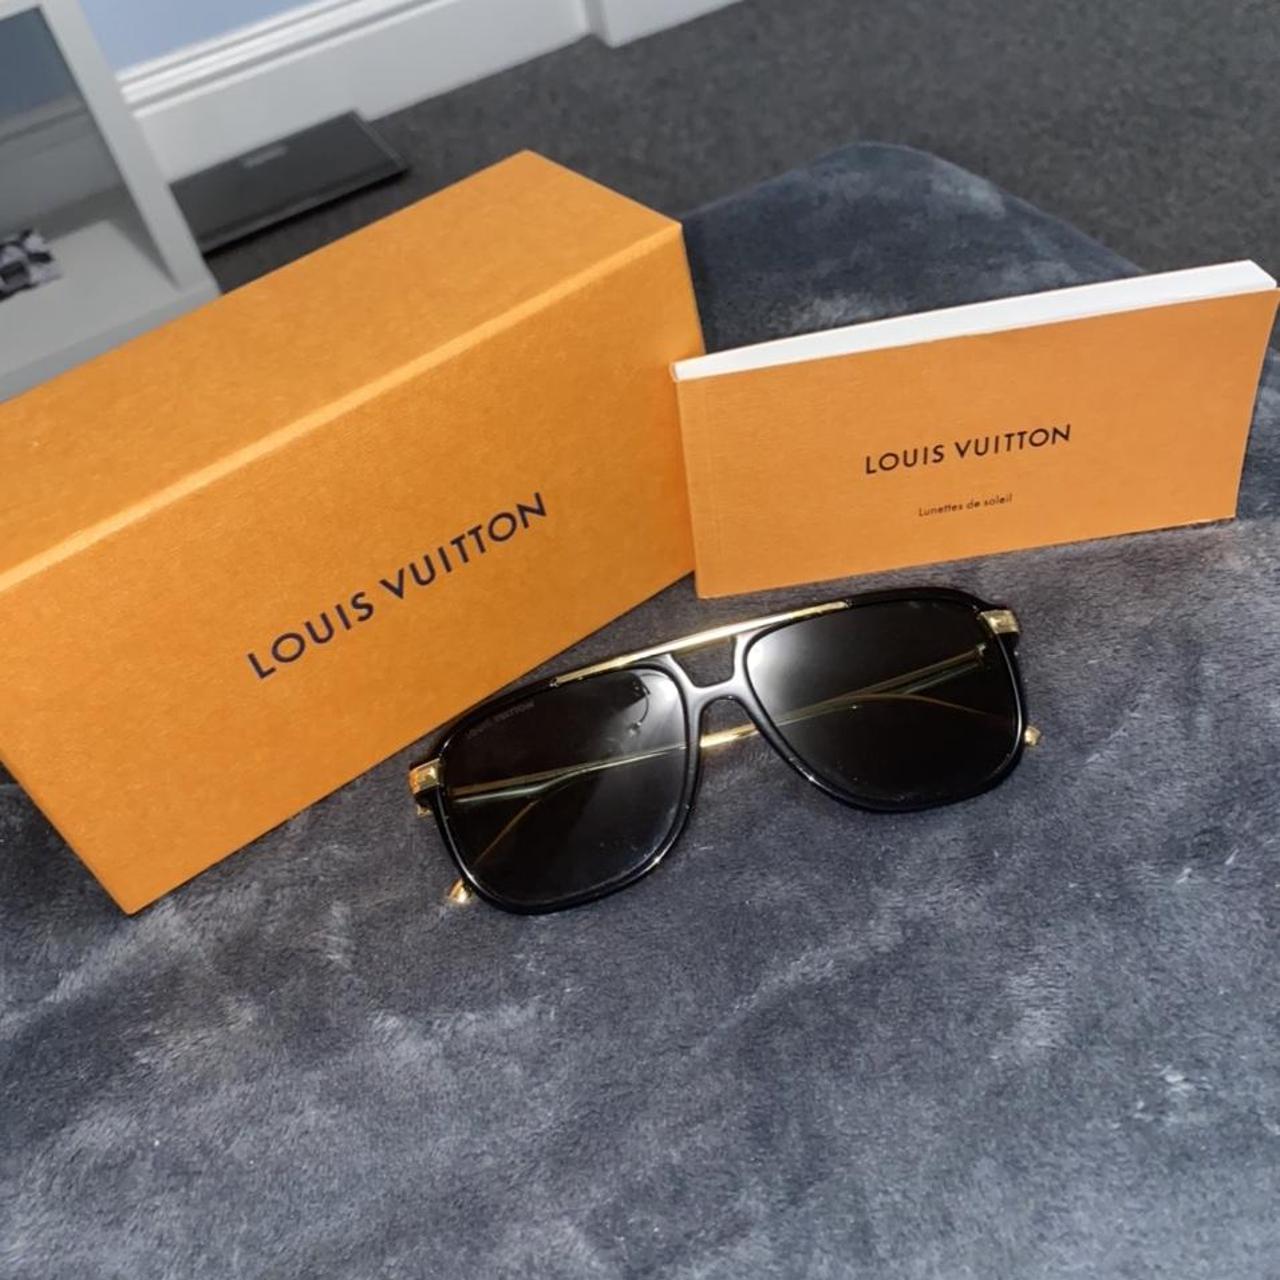 Lunettes de soleil Louis Vuitton - Twenty Nine